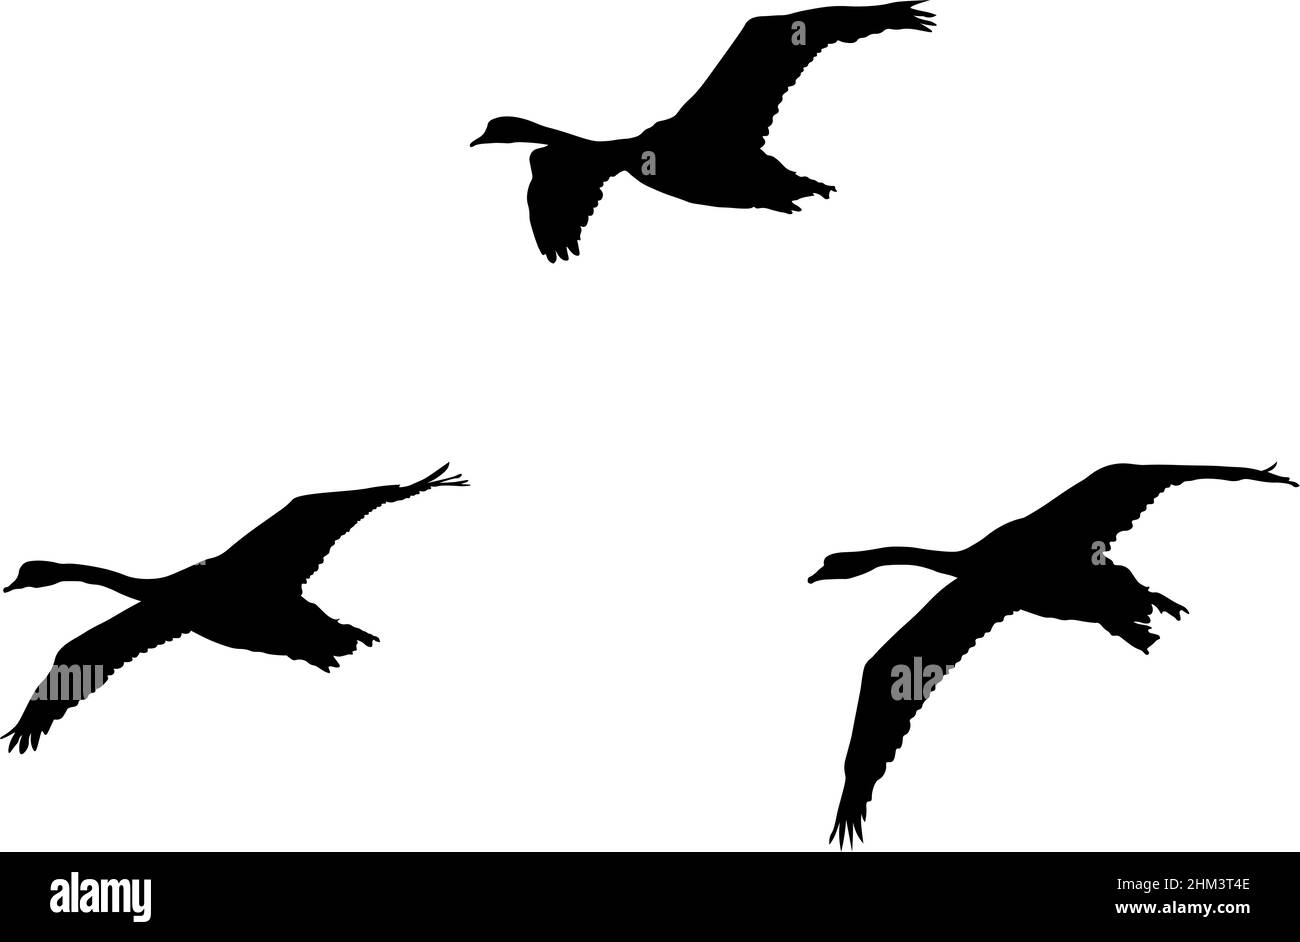 Illustration de trois cygnes en vol créée par l'isolation du contour des animaux d'une photographie et l'application d'un remplissage noir. Banque D'Images